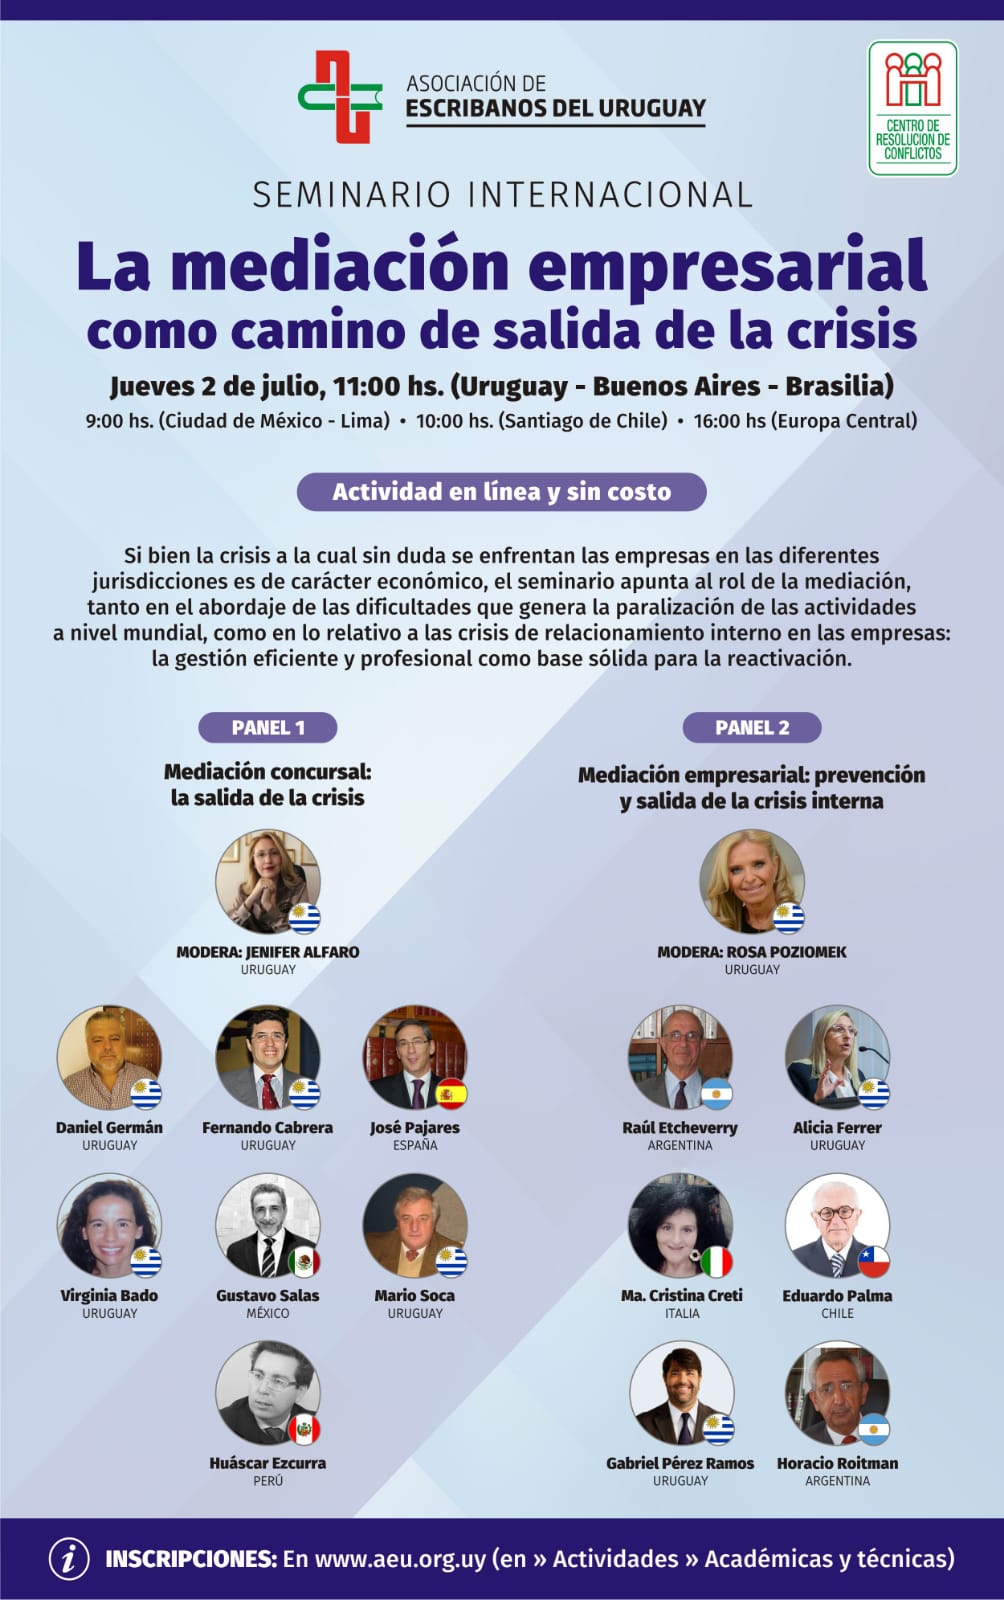 D. José Pajares expositor en el Webinar: La mediación empresarial como camino de salida de la crisis